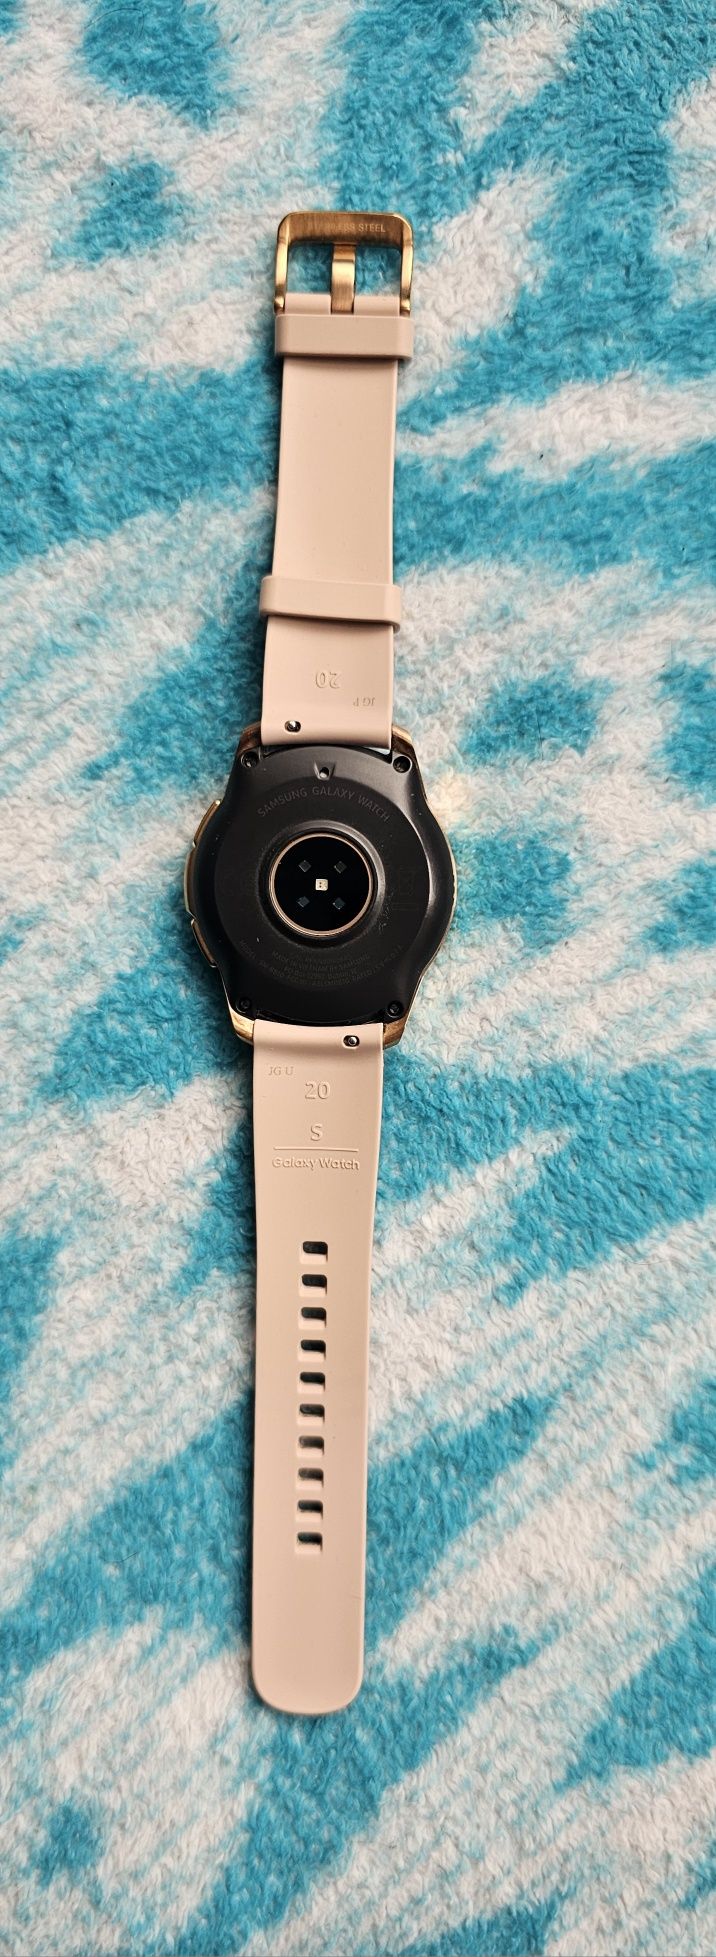 smartwatch samsung 42mm